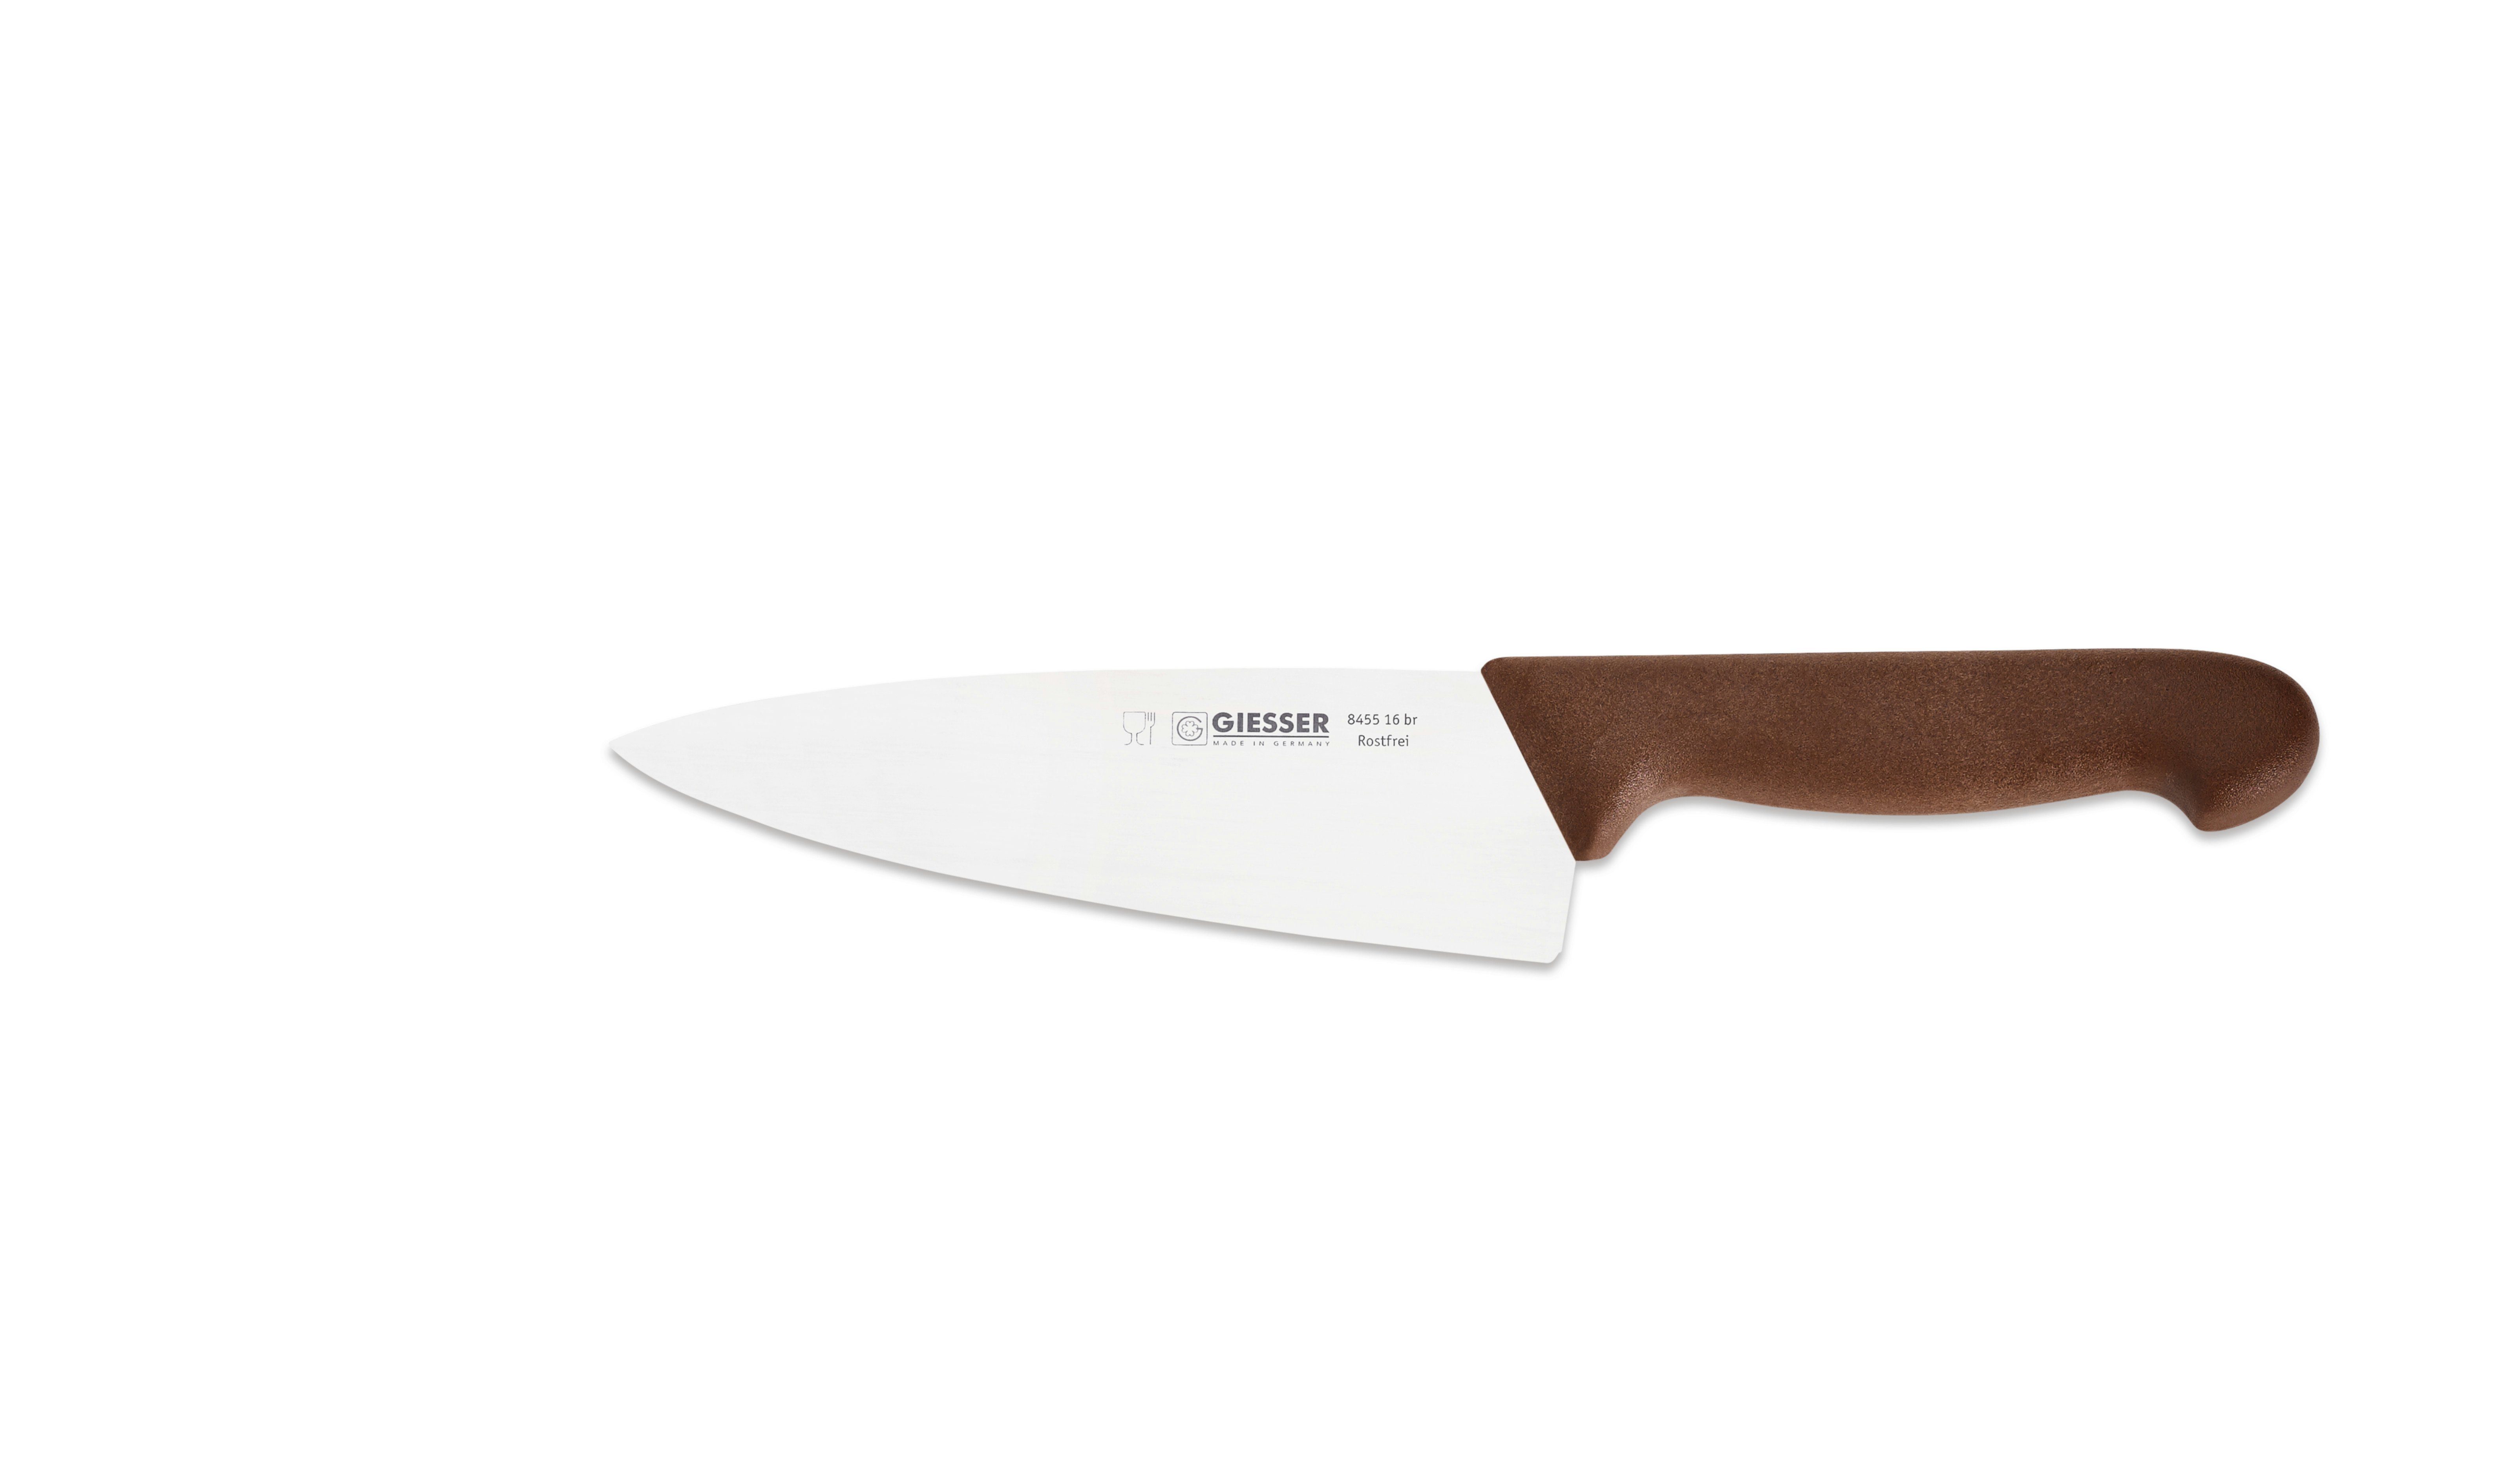 Giesser Messer Kochmesser Küchenmesser breit 8455, Rostfrei, breite Form, scharf, Handabzug, Ideal für jede Küche braun